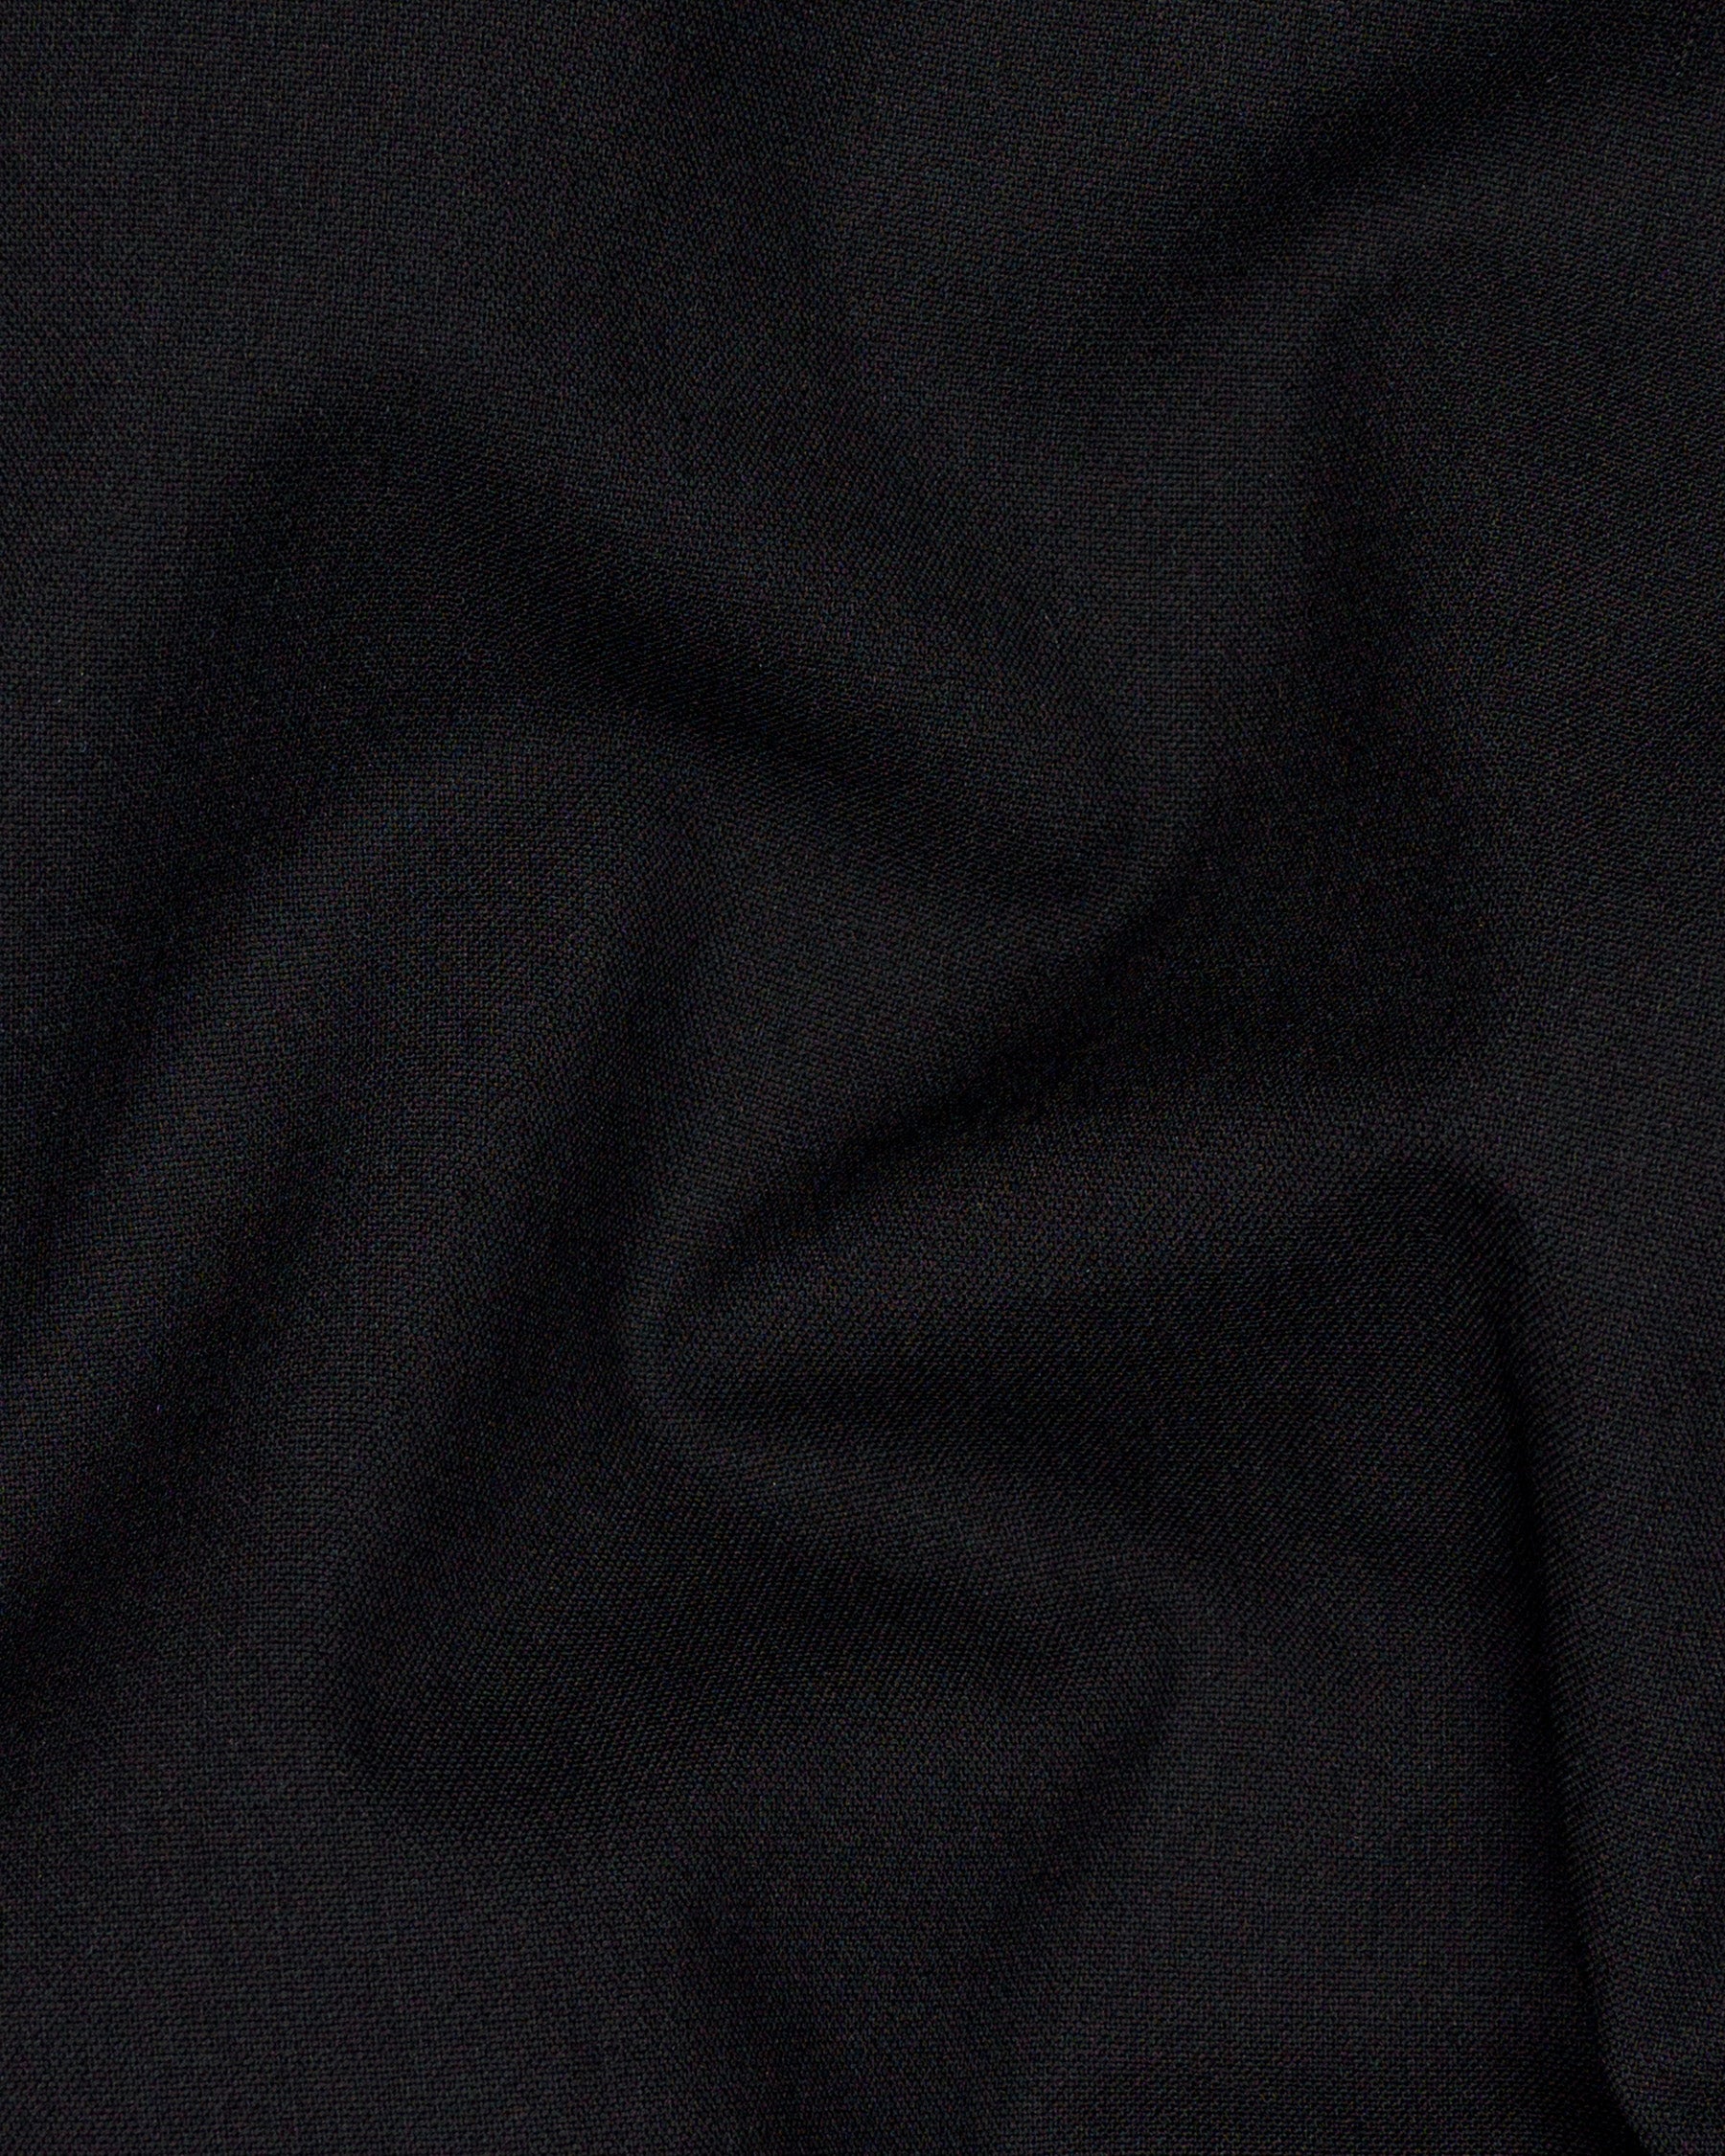 Mardi Gras Black Wool Rich Pant T1444-28, T1444-30, T1444-32, T1444-34, T1444-36, T1444-38, T1444-40, T1444-42, T1444-44